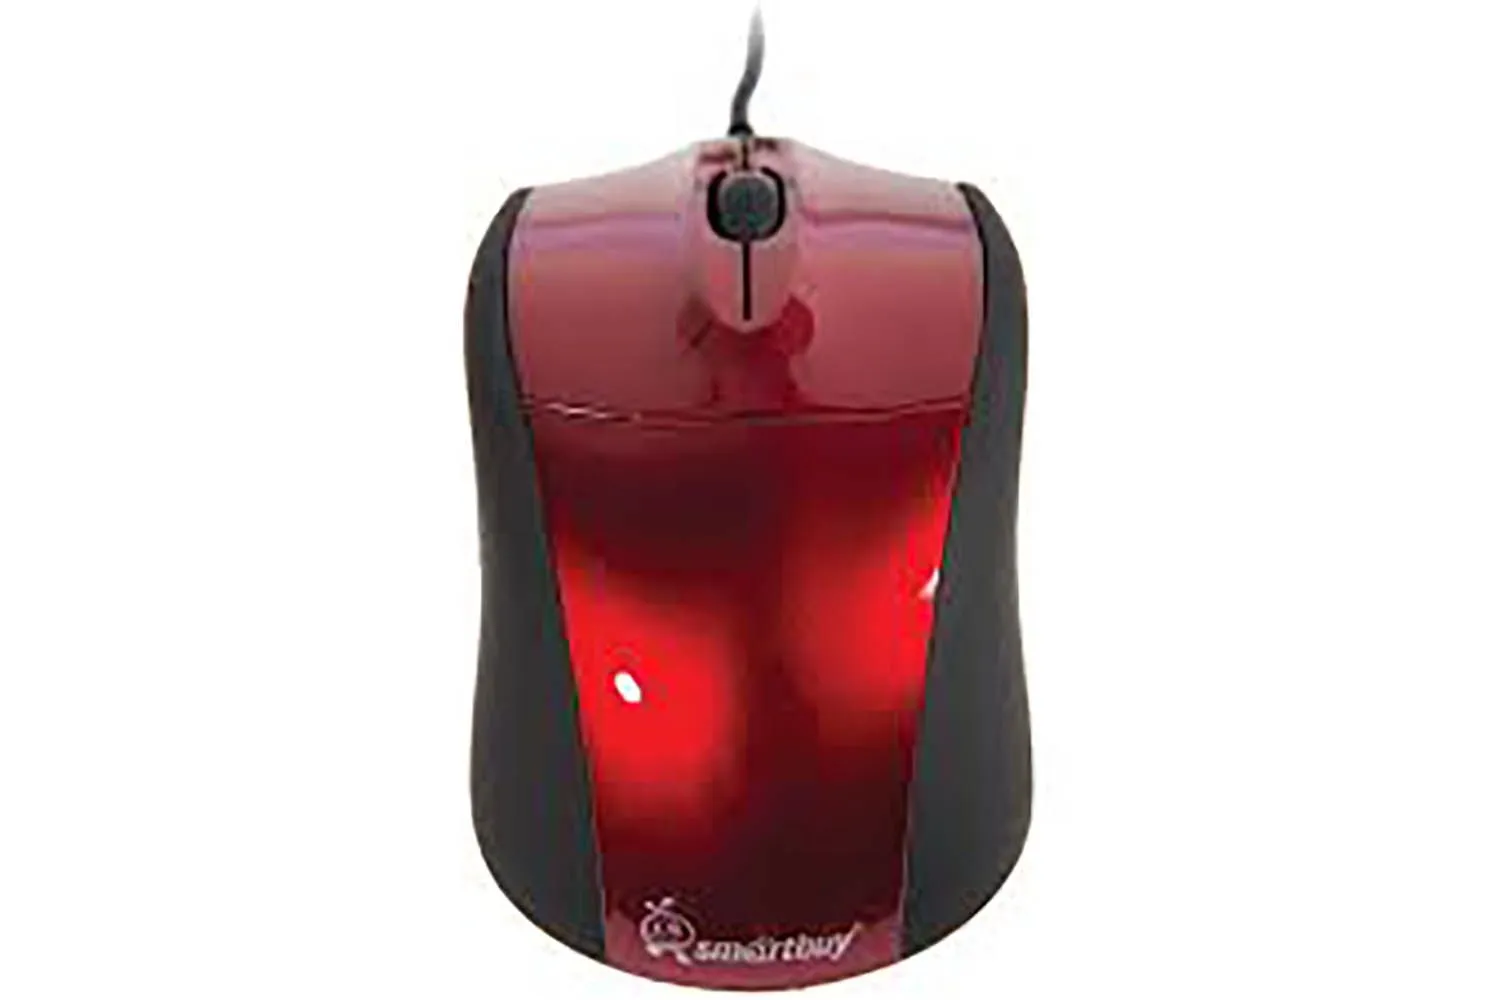 Мышь проводная SmartBuy 325, красная, USB. Разрешение: 1000 dpi. Кнопок: 2 + колесо прокрутки. Опти